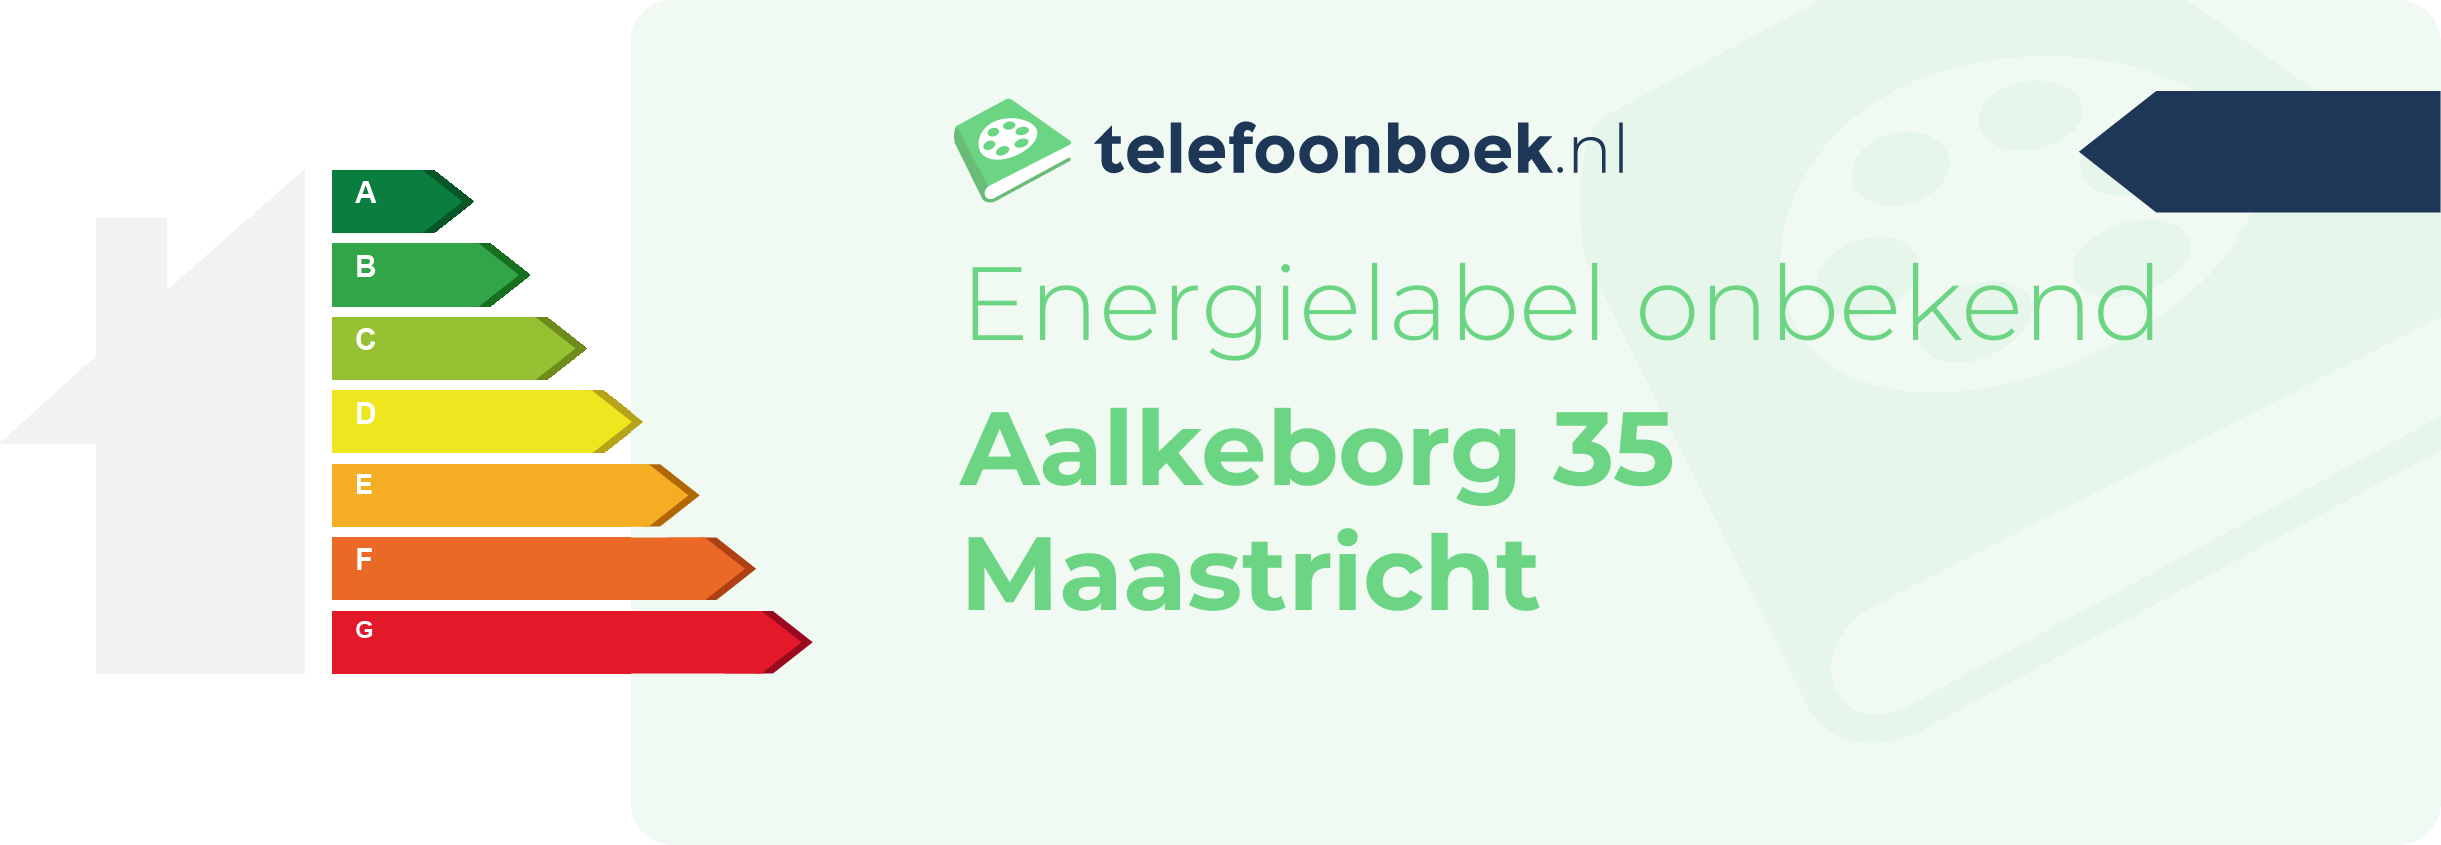 Energielabel Aalkeborg 35 Maastricht